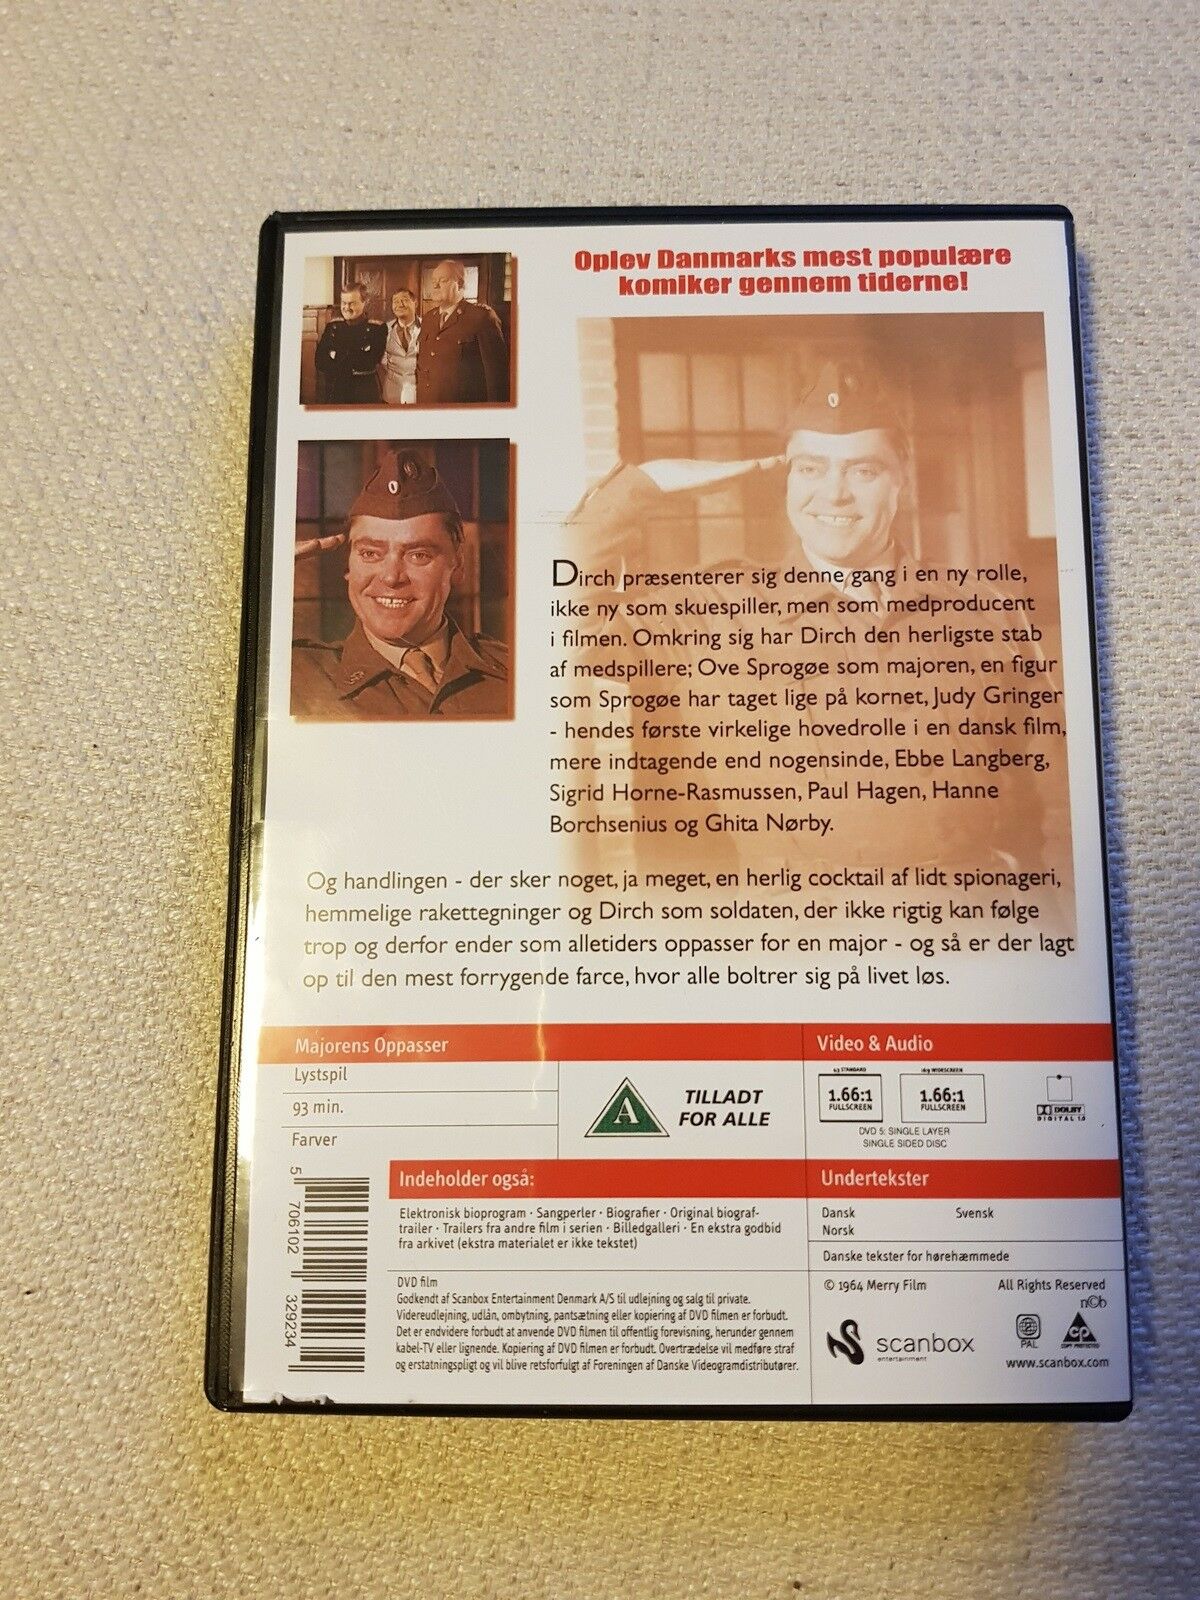 Majorens oppasser, instruktør Sven Methling, DVD